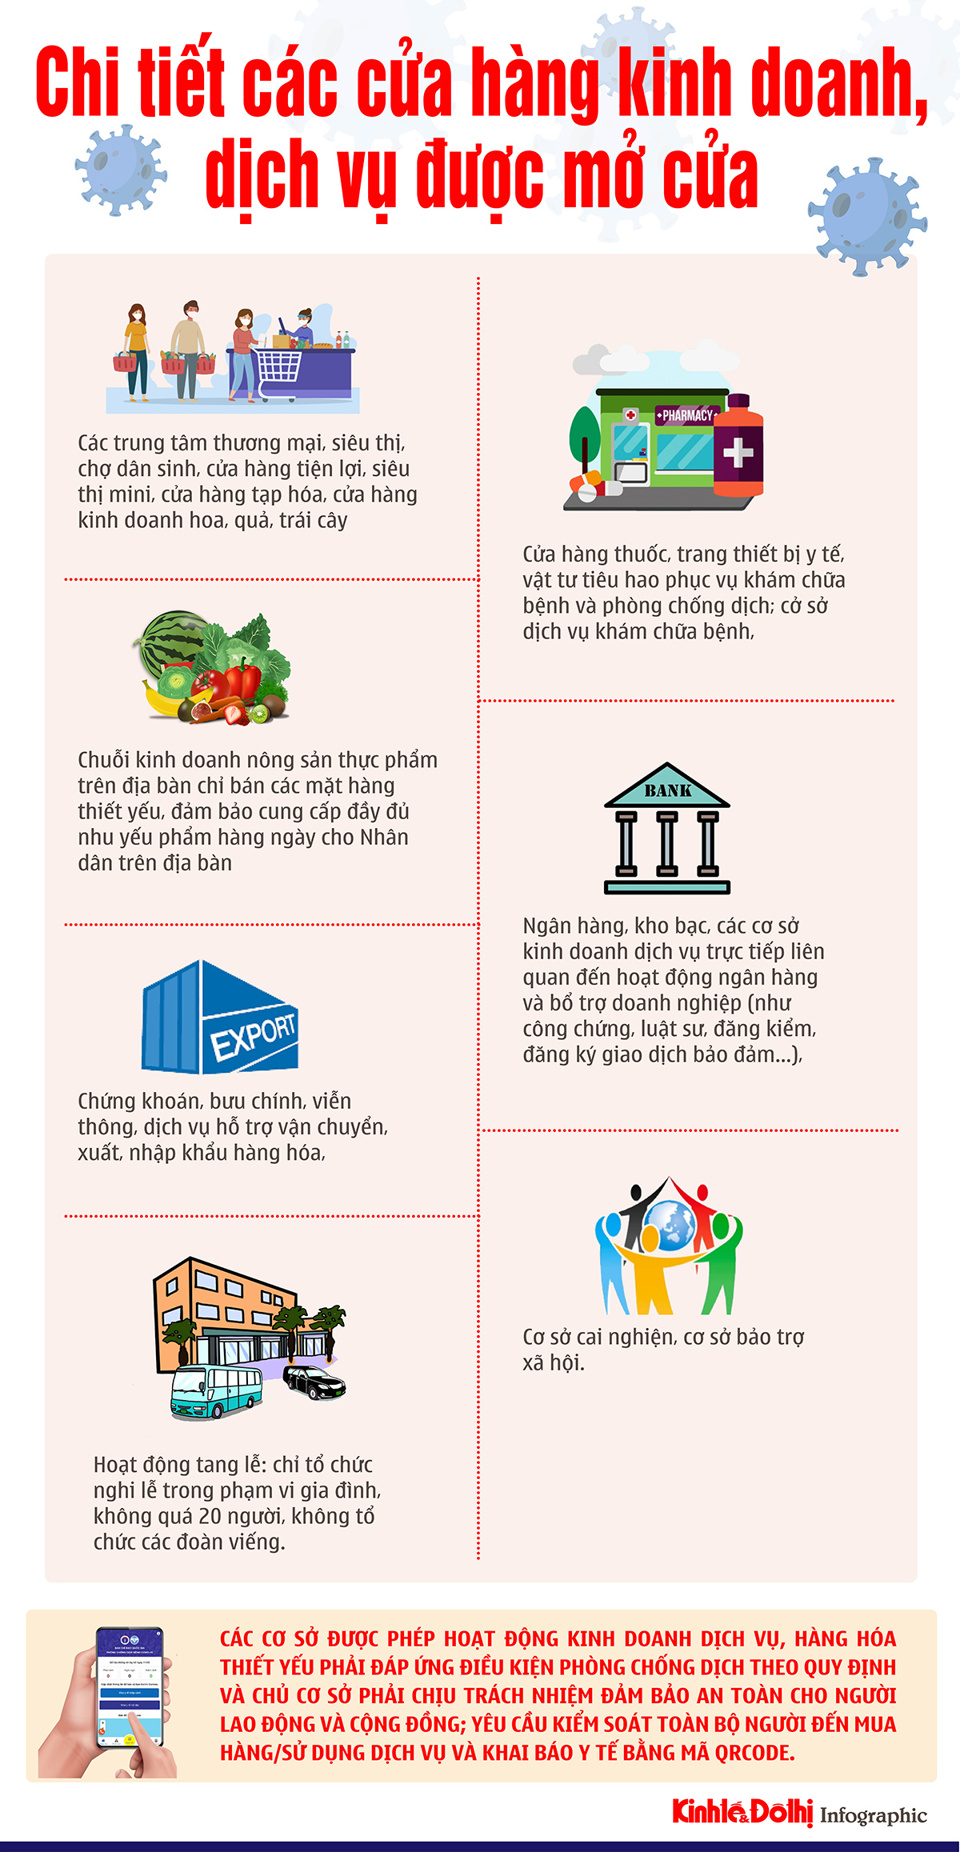 [Infographic] Chi tiết các cửa hàng kinh doanh, dịch vụ ở Hà Nội được mở cửa - Ảnh 1